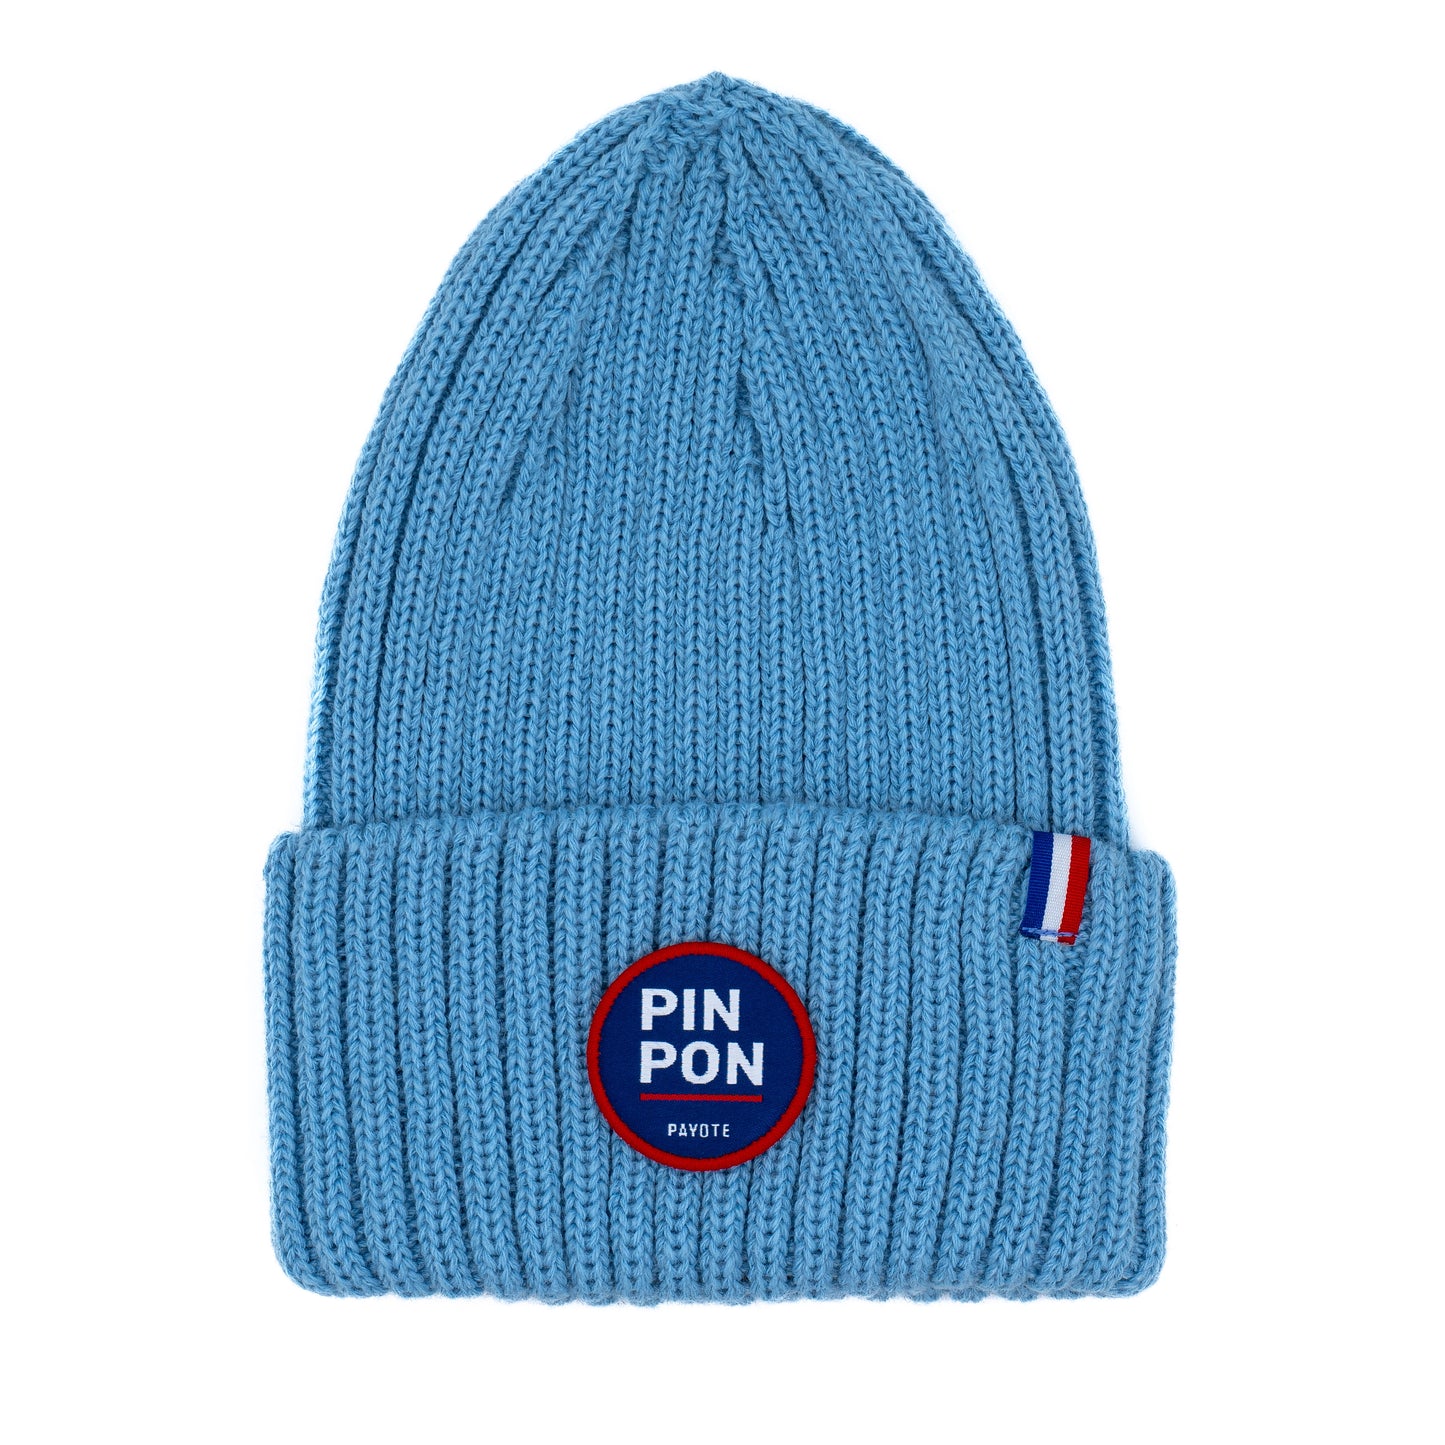 Bonnet bleu ciel solidaire et made in France "Pin Pon"